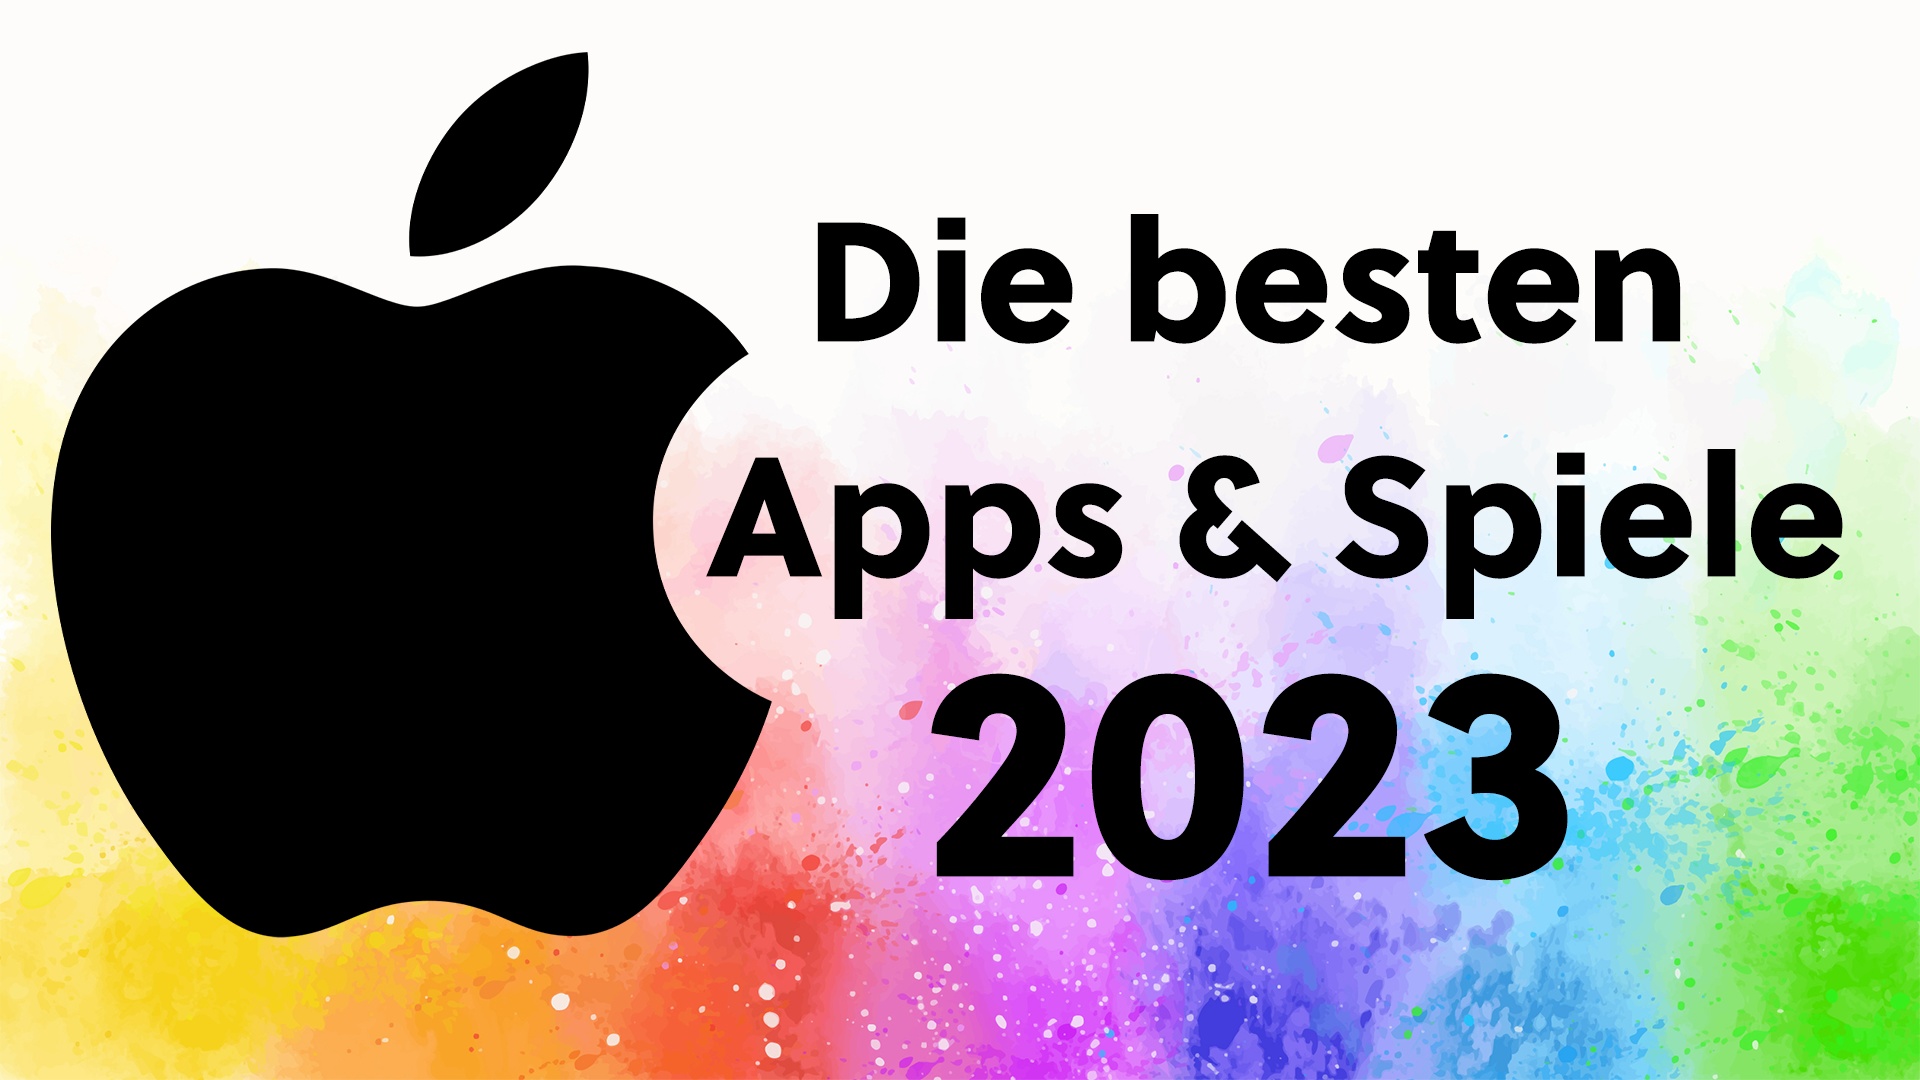 #Top 14 Apps & Spiele im Jahr 2023: Apple kürt die besten Anwendungen für iPhone, iPad, Apple Watch & Co